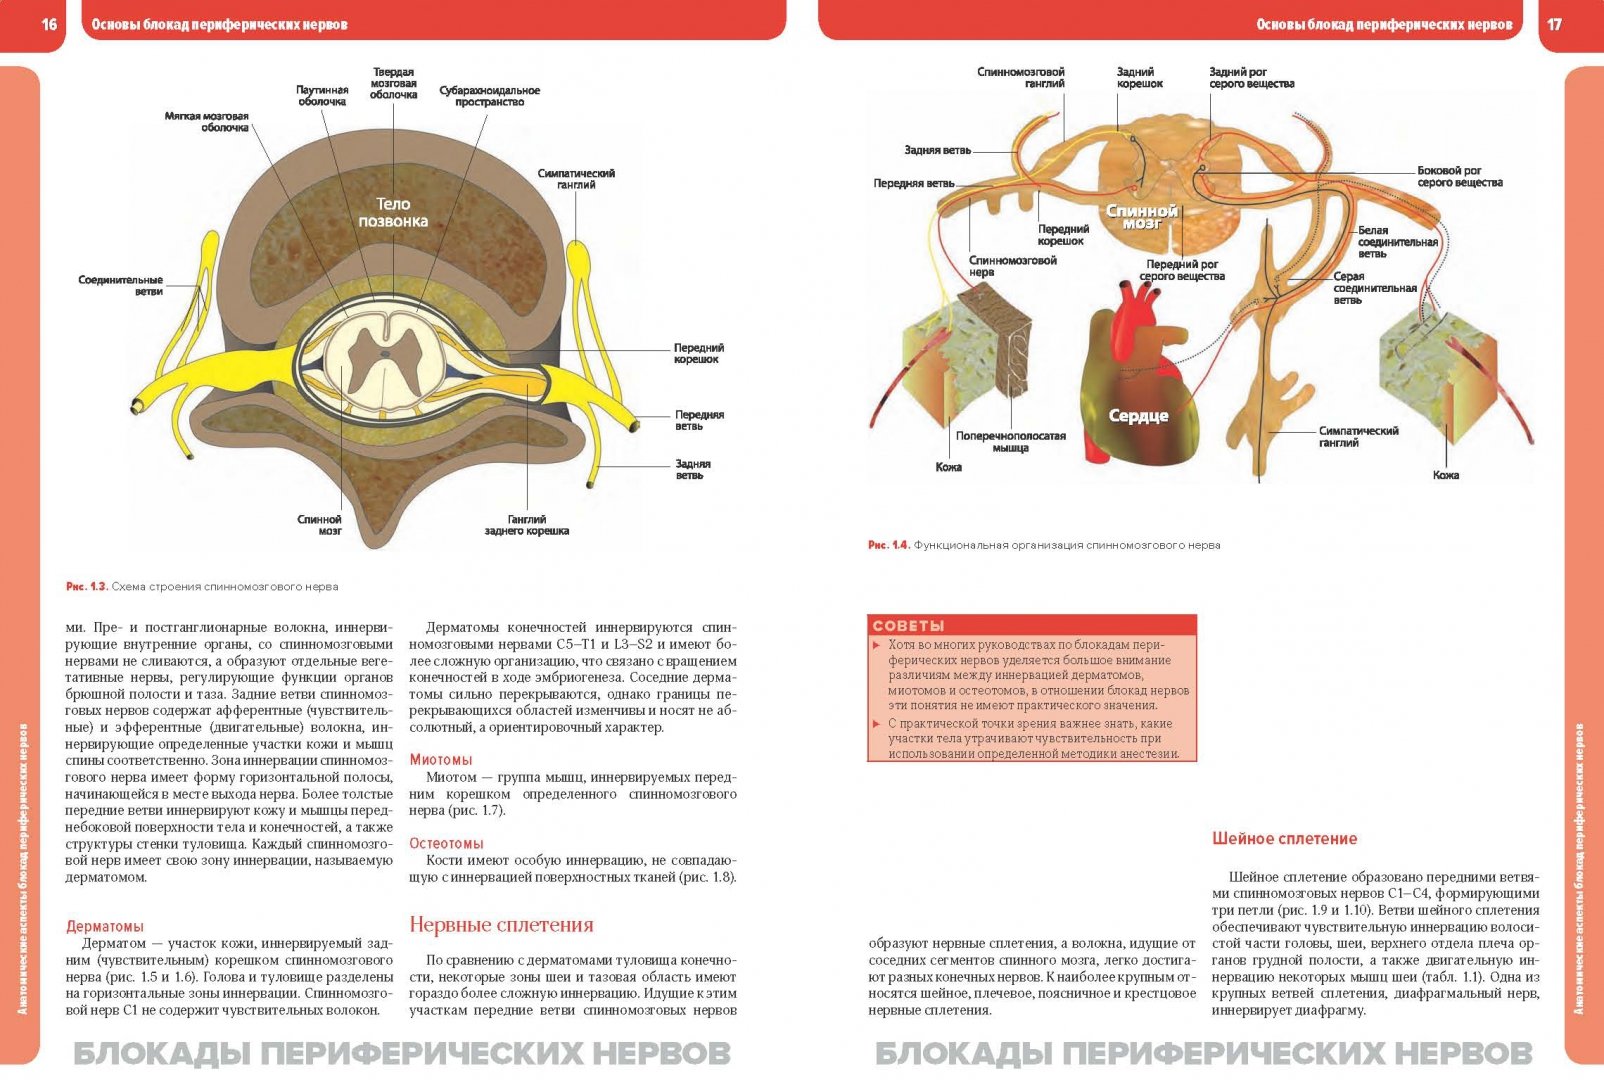 Иллюстрация 4 из 6 для Блокады периферических нервов и регионарная анестезия под ультразвуковым контролем - Адмир Хаджич | Лабиринт - книги. Источник: Лабиринт